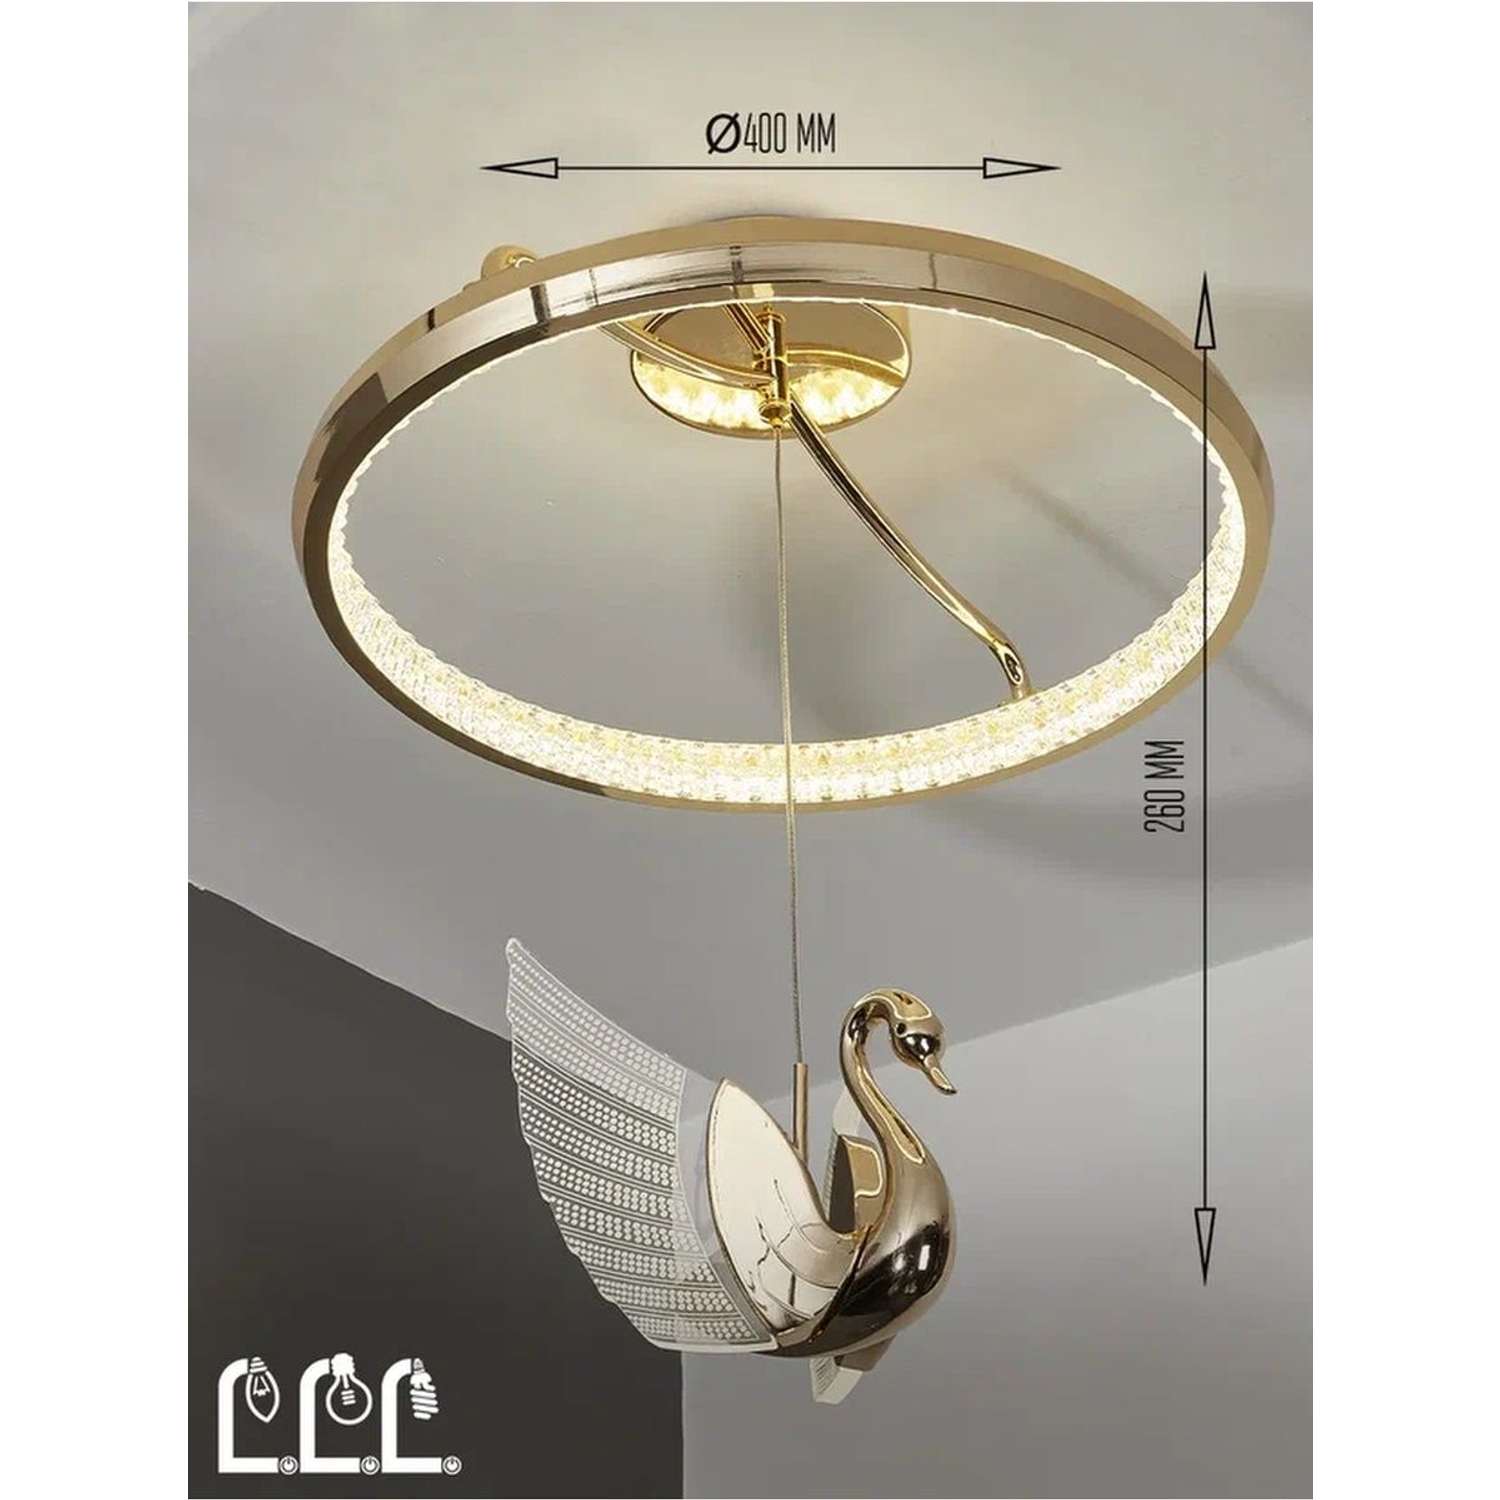 Потолочный светильник LLL KD8169 золотой Птицы с вращением на 360 градусов - фото 6